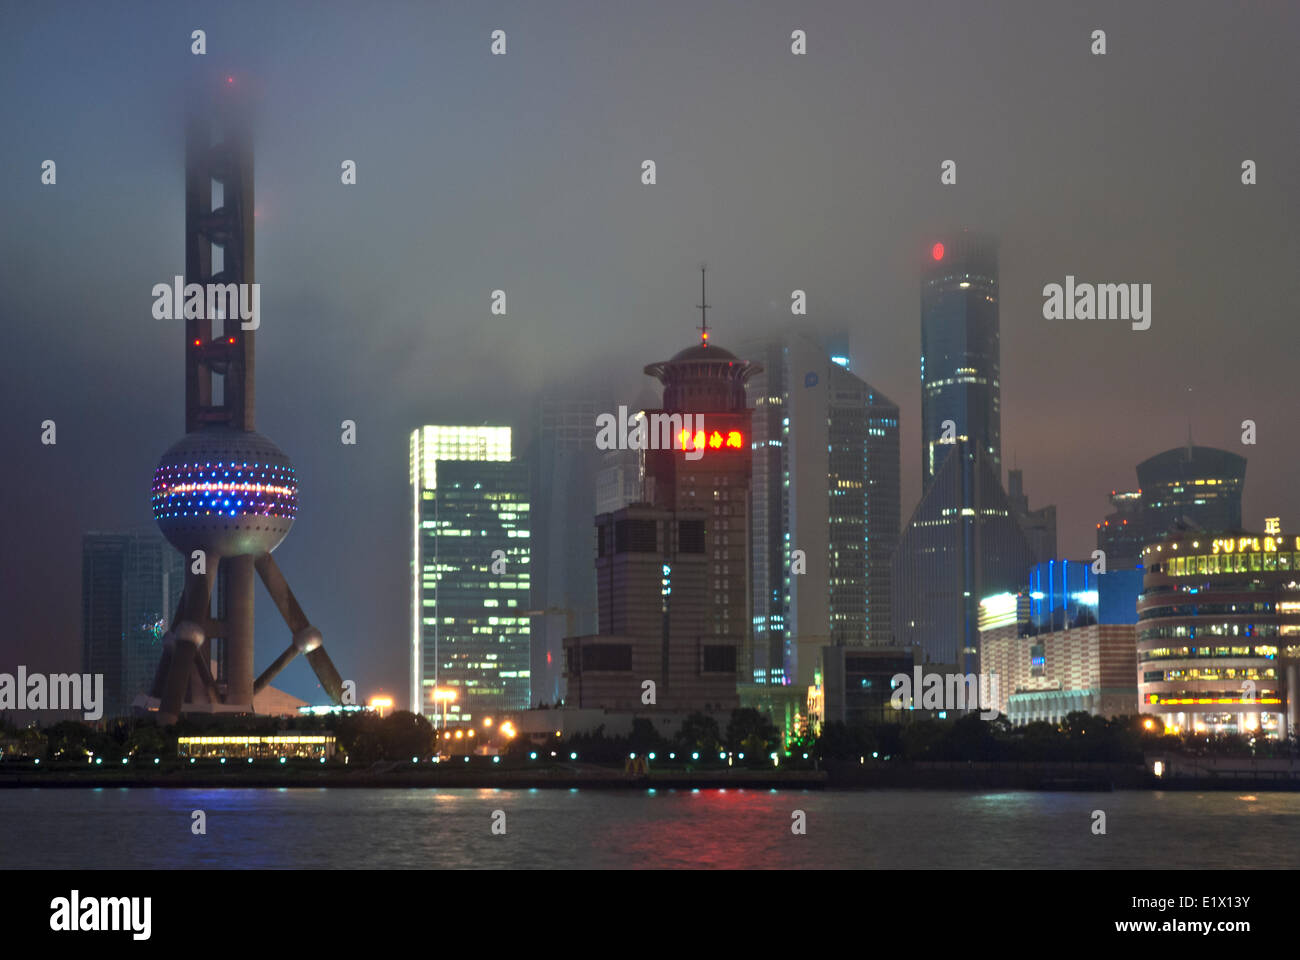 La Oriental Pearl TV Tower e lo skyline di Pudong nella nebbia, Shanghai Foto Stock